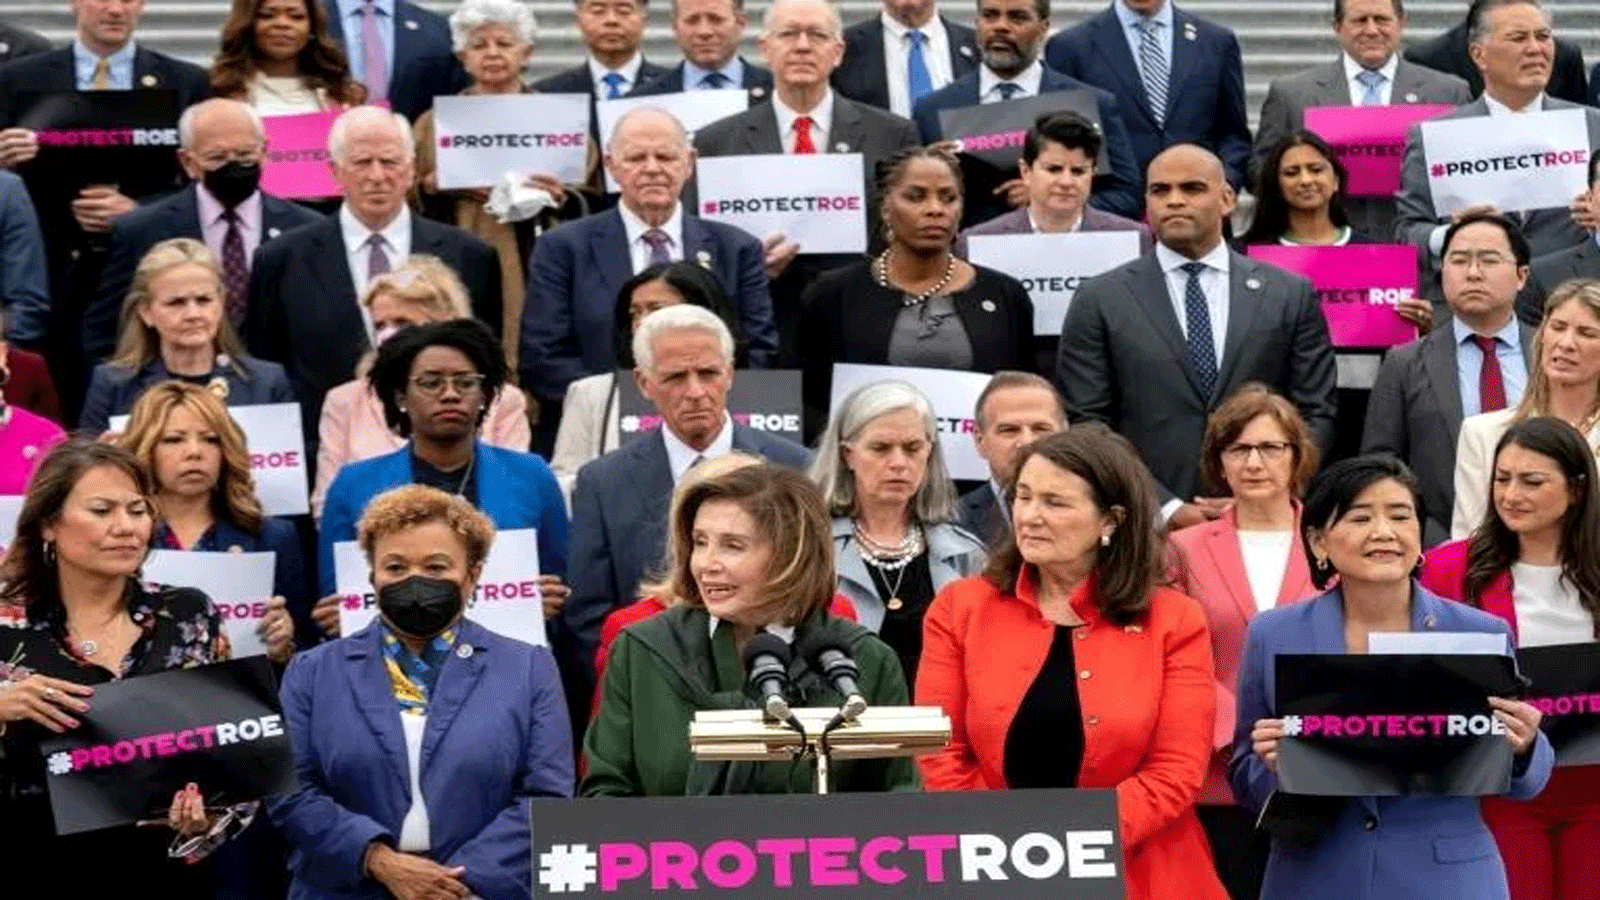 دعت رئيسة مجلس النواب الأميريكي نانسي بيلوسي وزملائها من المشرعين الديمقراطيين إلى تعبئة جماهيرية عشية يوم عمل على مستوى البلاد لدعم حقوق الإجهاض